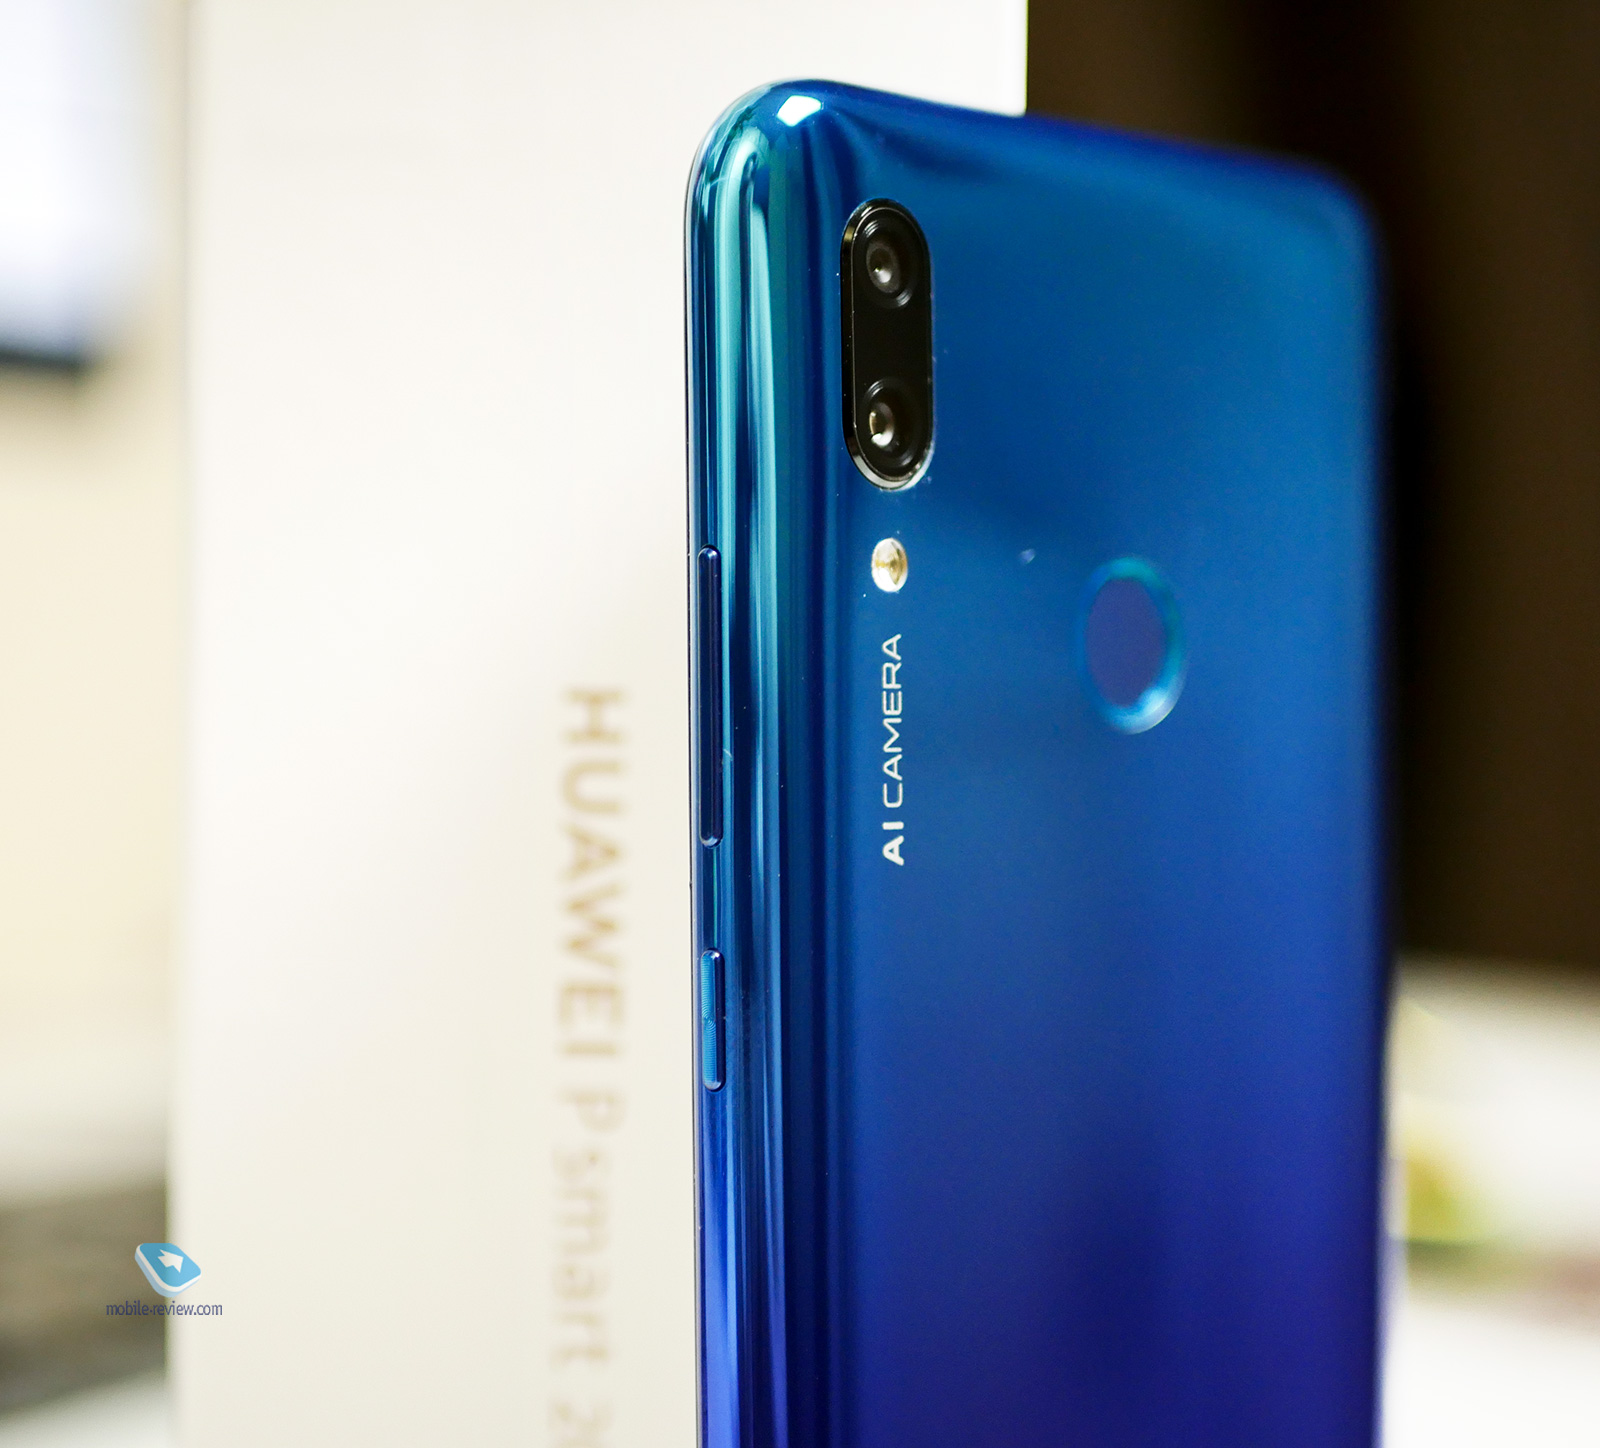    Huawei P Smart (2019)